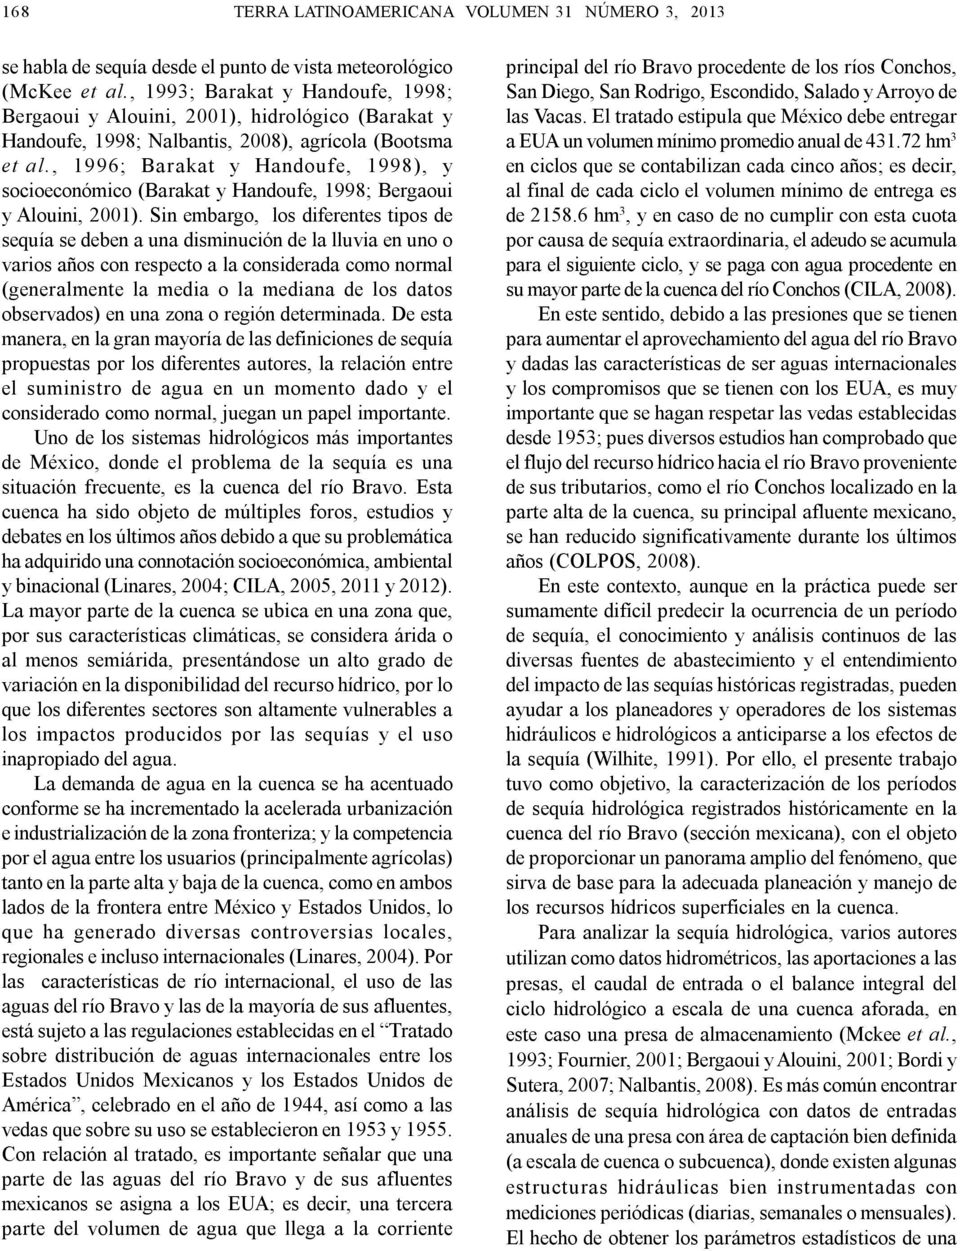 , 1996; Barakat y Handoufe, 1998), y socioeconómico (Barakat y Handoufe, 1998; Bergaoui y Alouini, 2001).